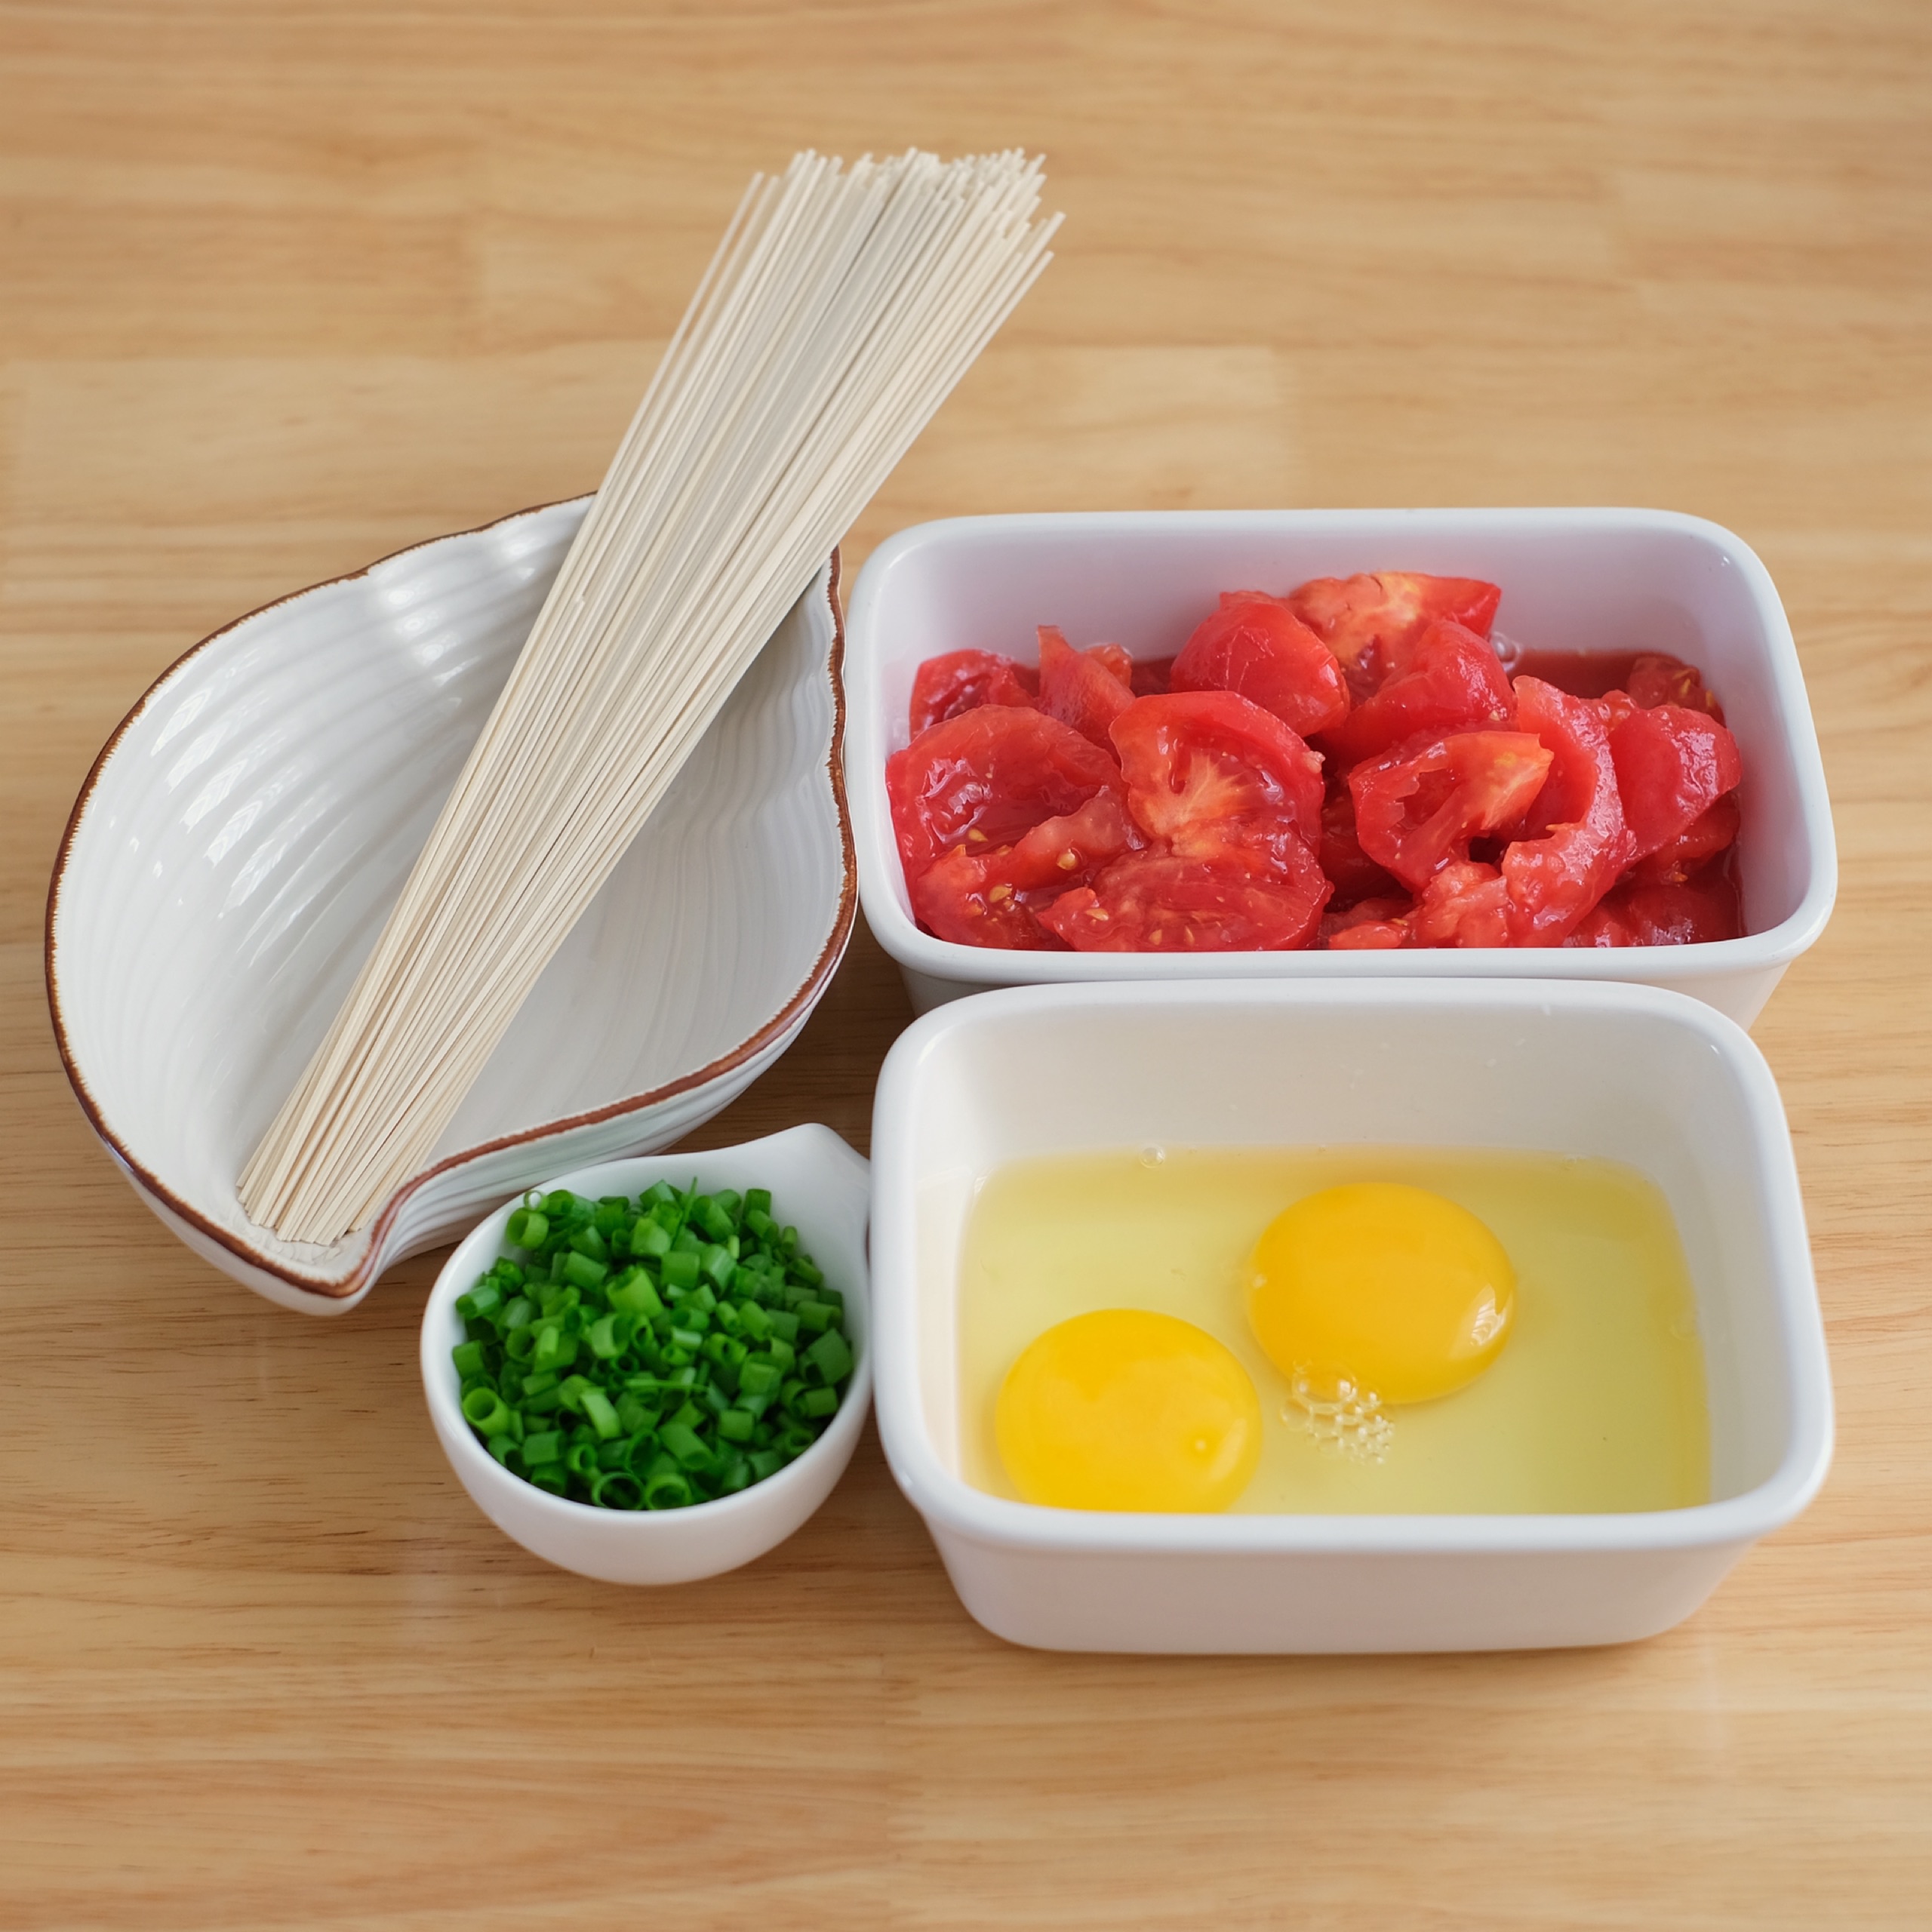 怎样才能做出一碗非常好吃的西红柿鸡蛋面？ - 知乎